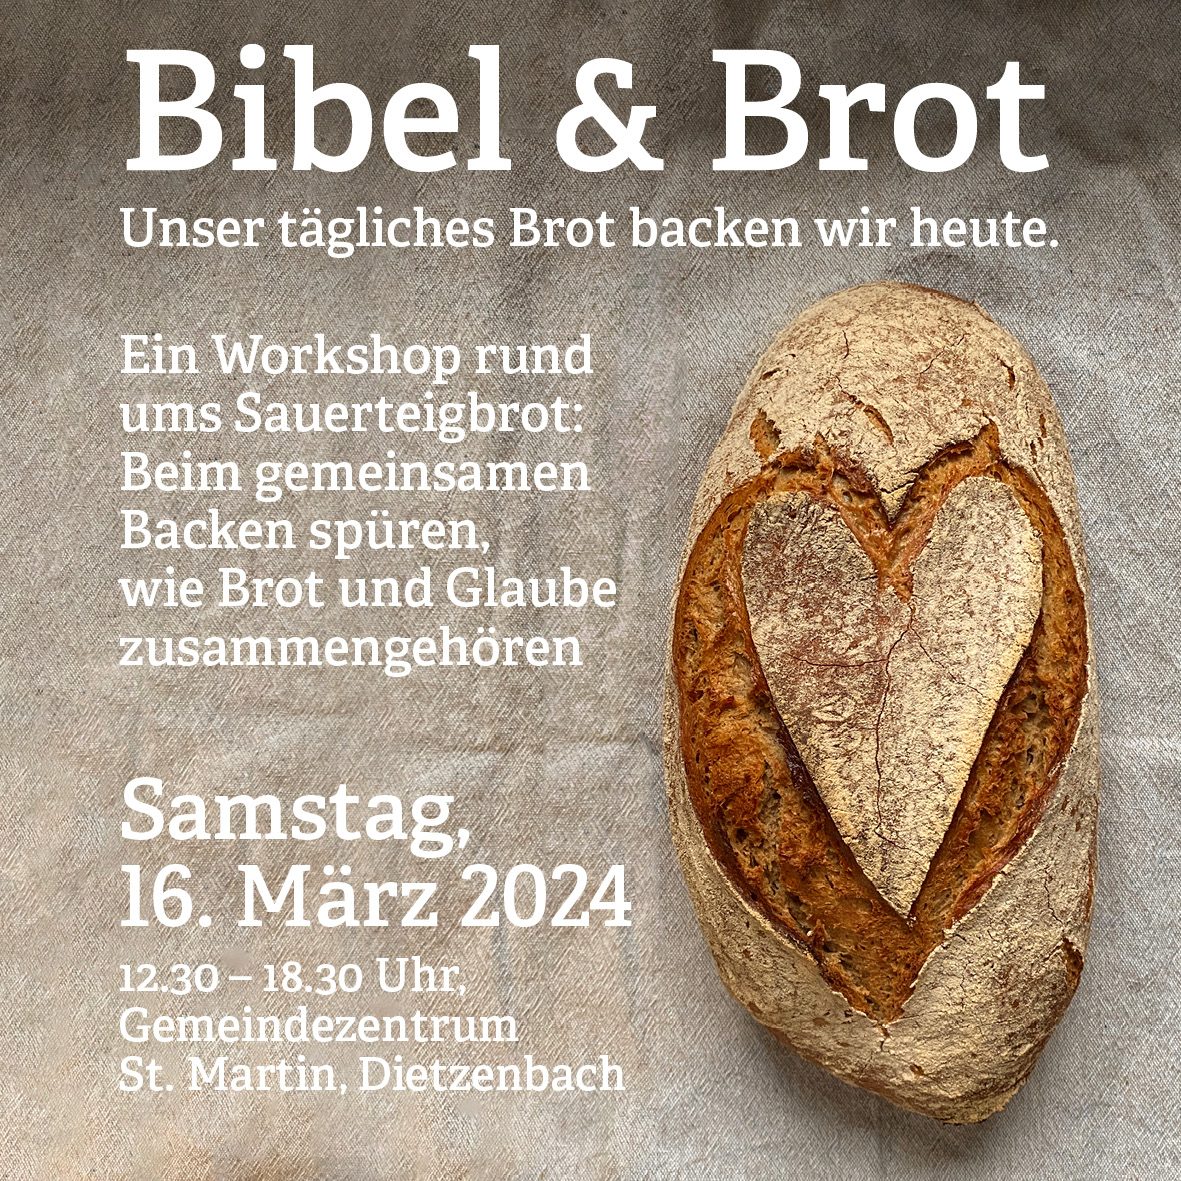 Bibel & Brot (c) Edith Hemberger